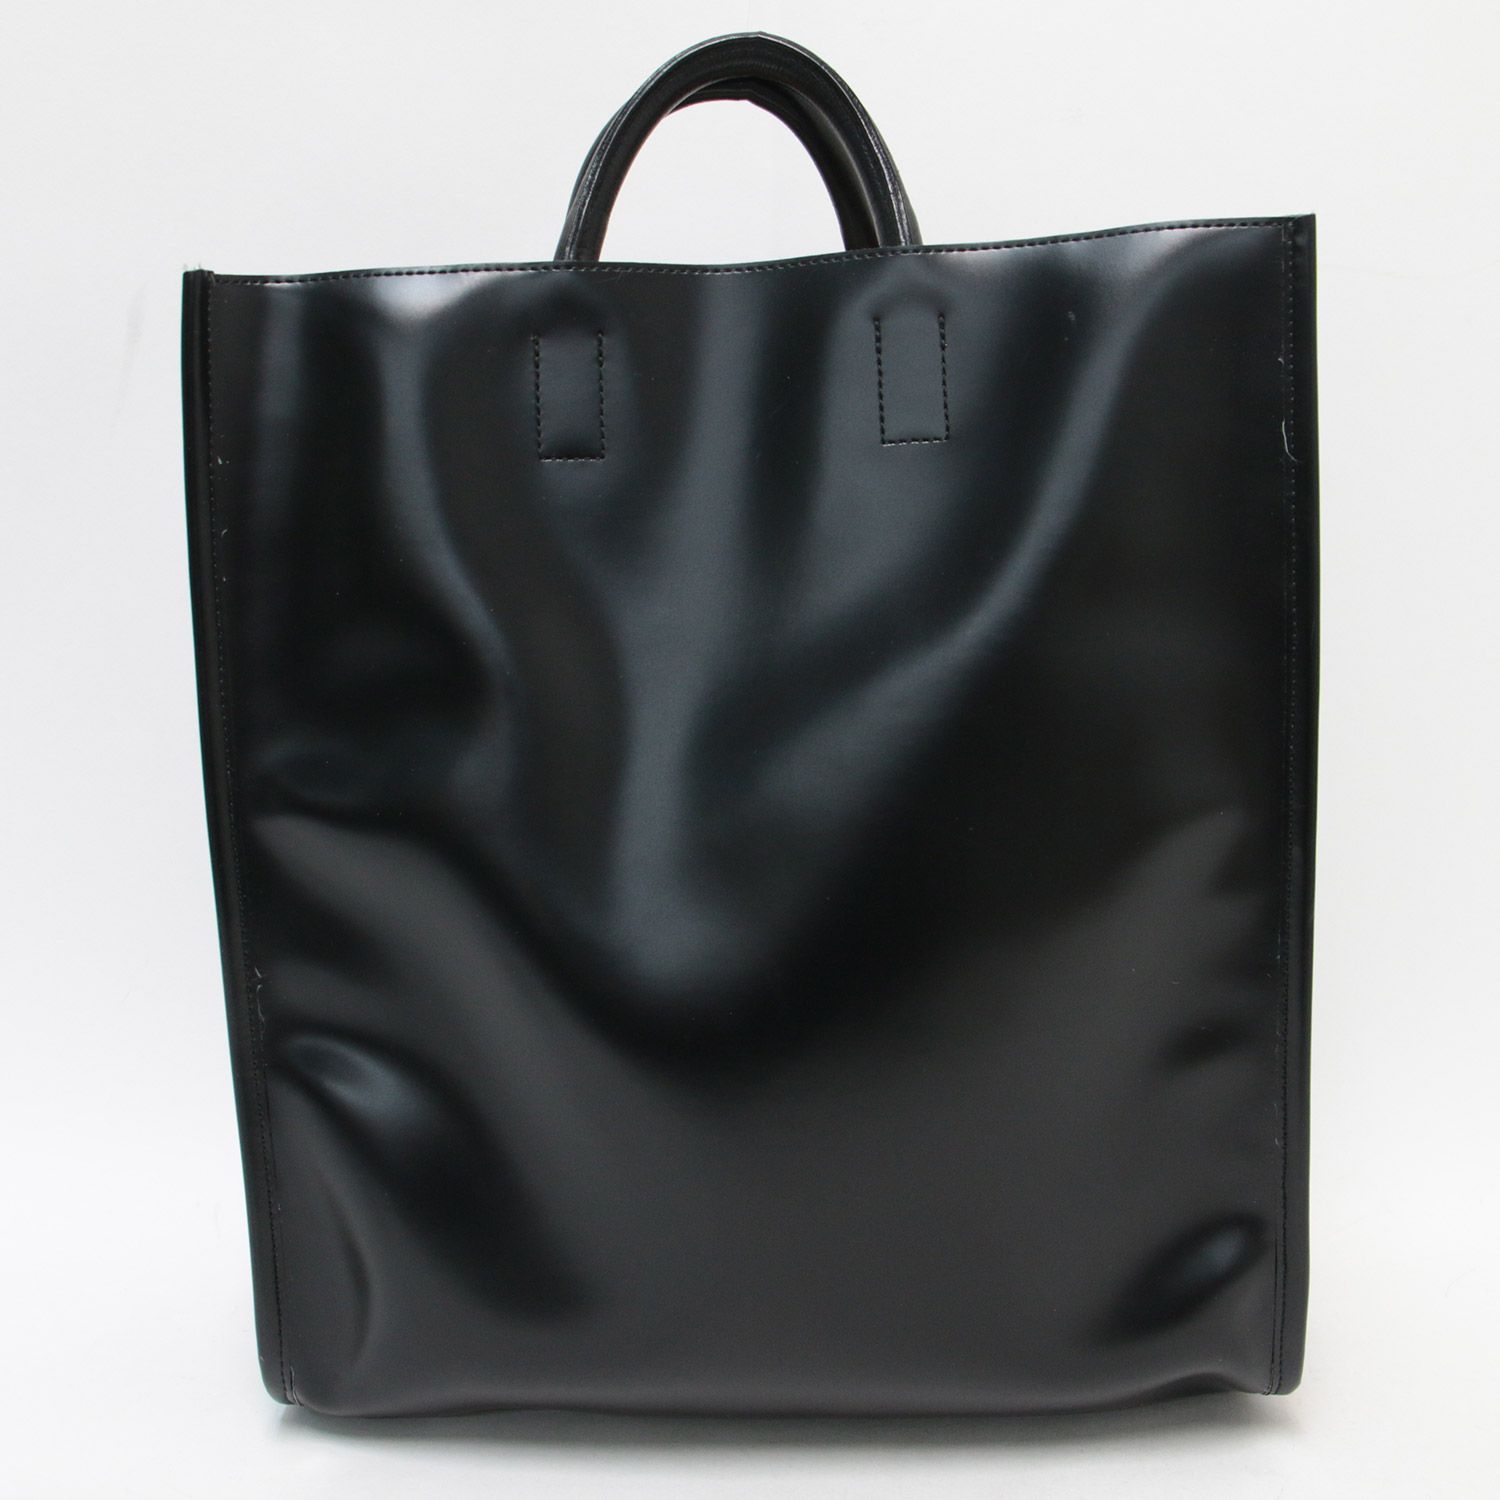 PIENI ピエニ バッグ トート ハンド 鞄 かばん 23春夏 ブラック 黒FREEA4 PVC レザー ベーシック 通勤 フォーマル A4 上品  きれいめ ビジネス